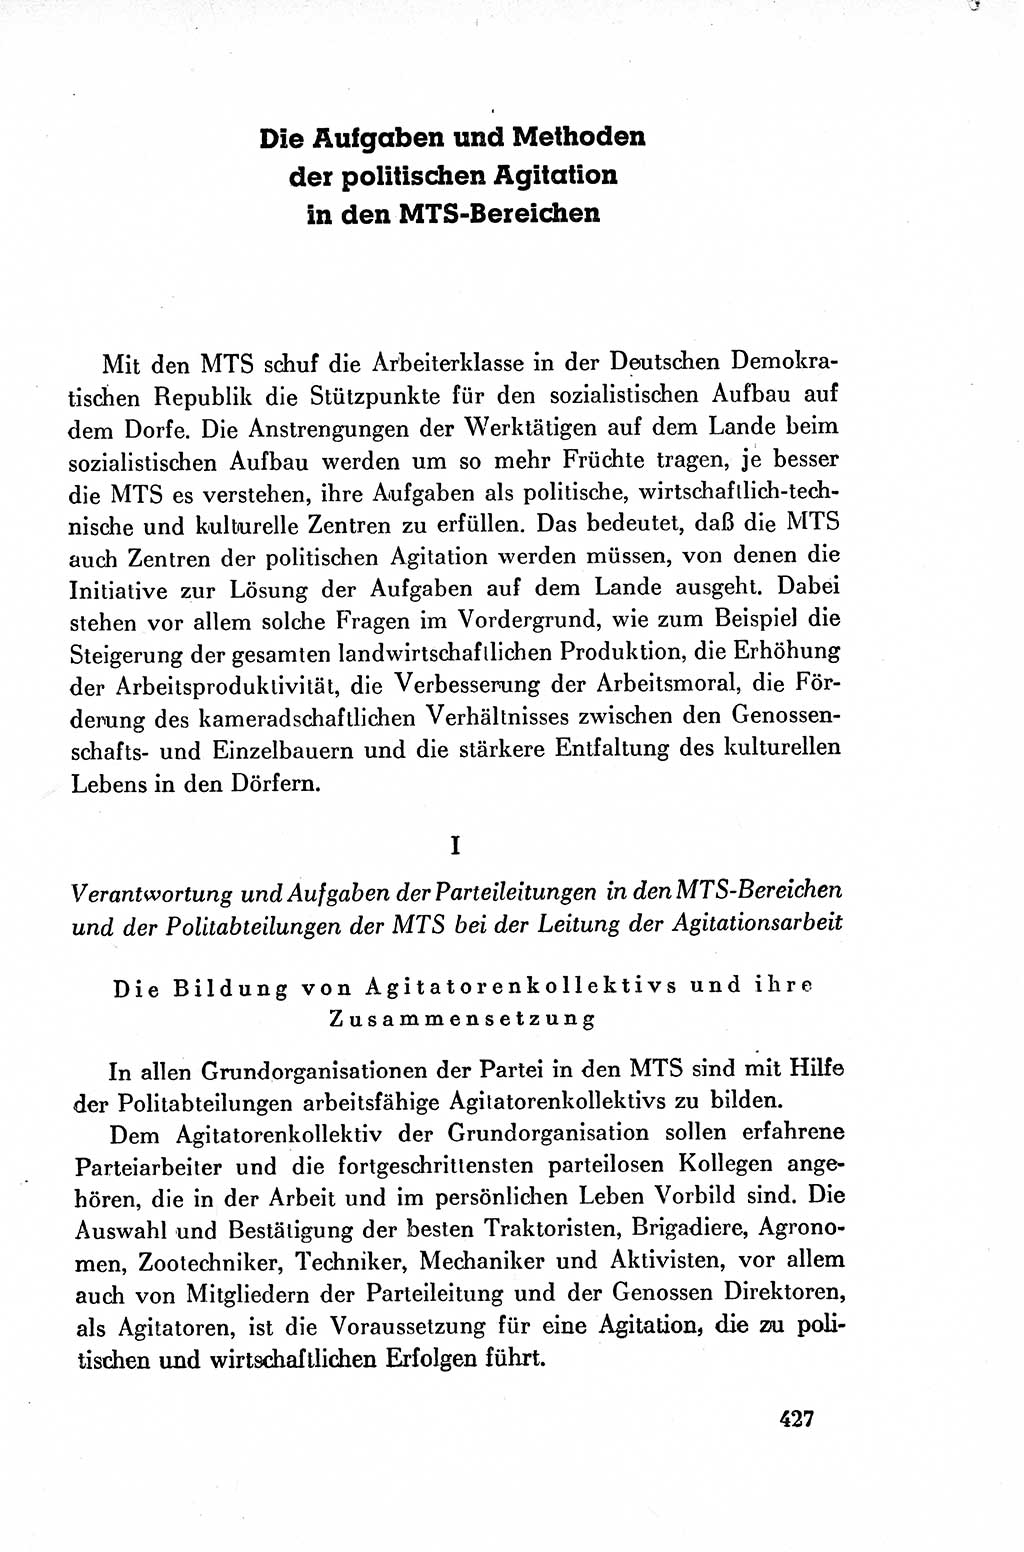 Dokumente der Sozialistischen Einheitspartei Deutschlands (SED) [Deutsche Demokratische Republik (DDR)] 1954-1955, Seite 427 (Dok. SED DDR 1954-1955, S. 427)